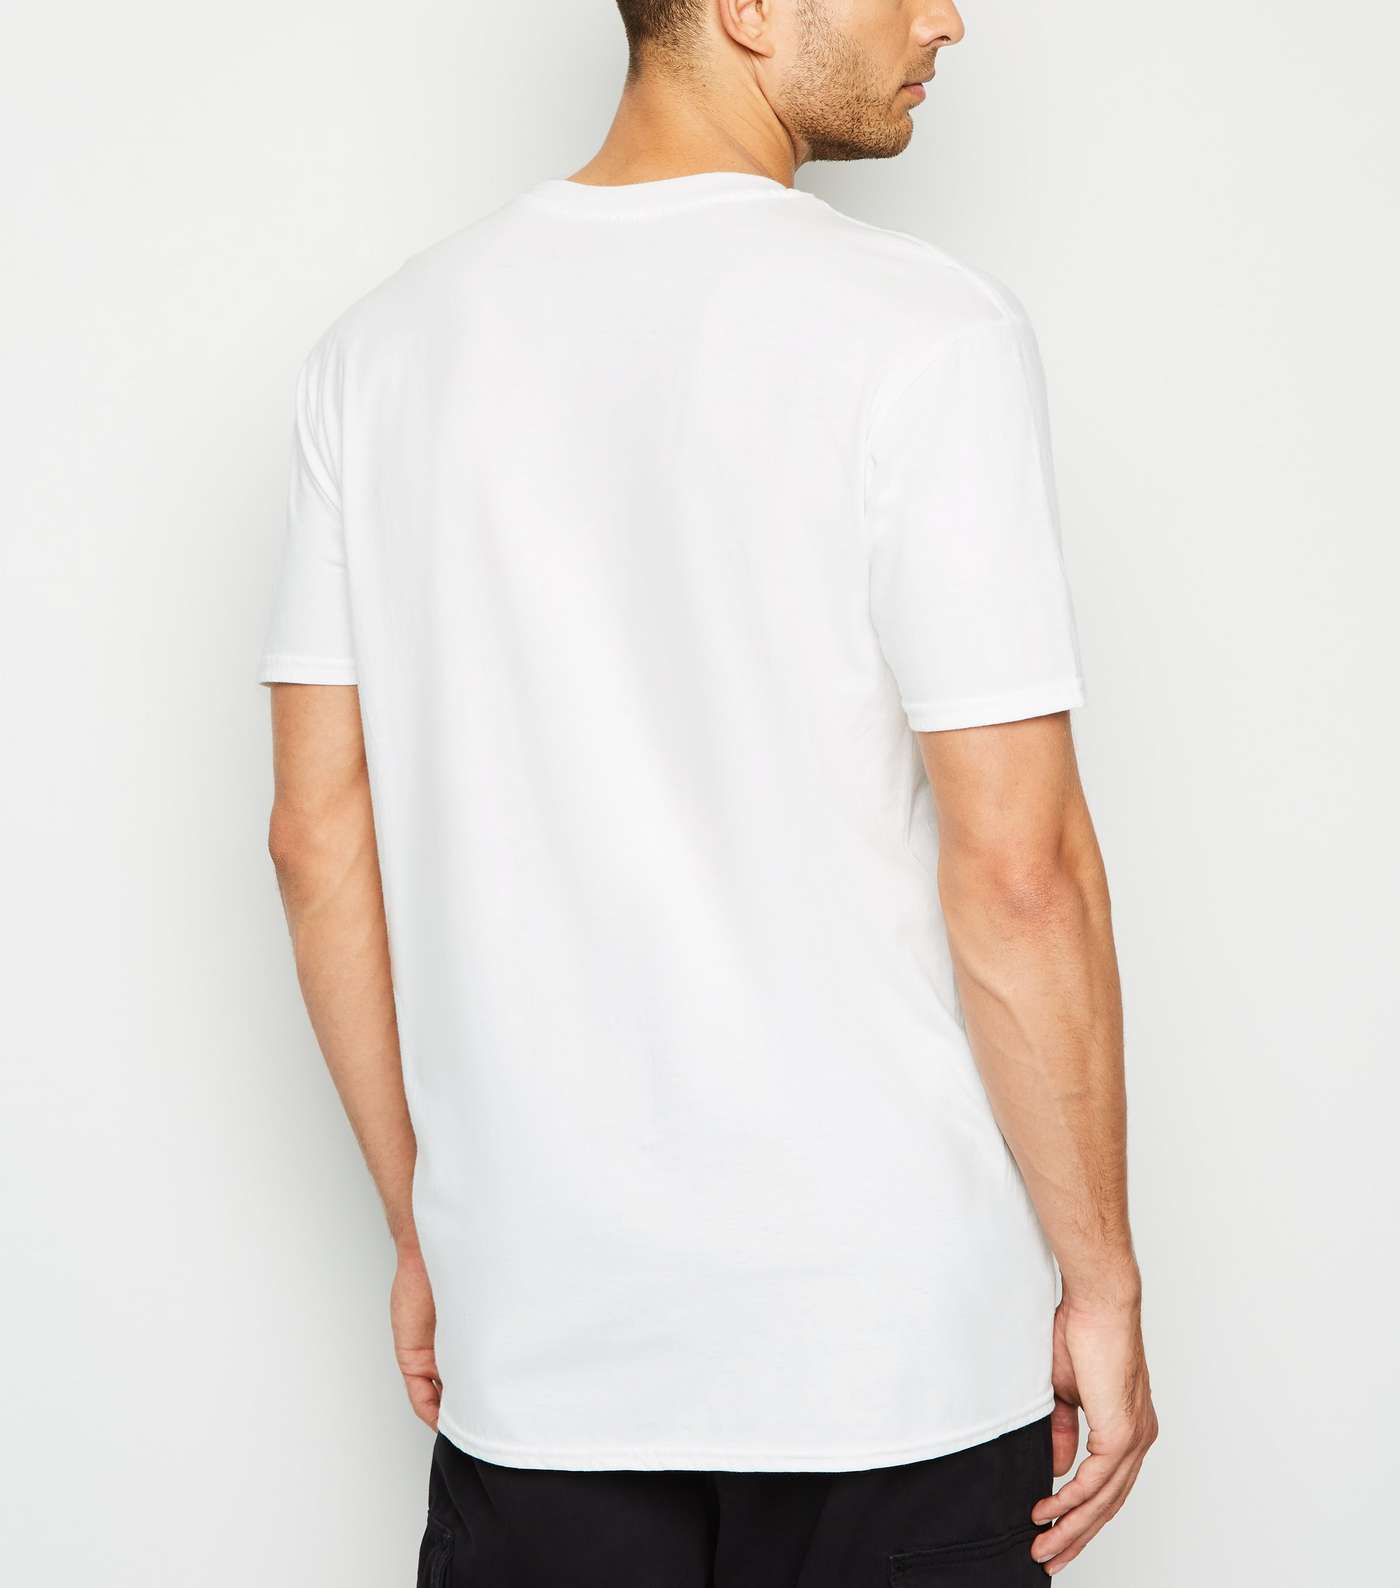 White Oversized Freddie Mercury T-Shirt Image 3